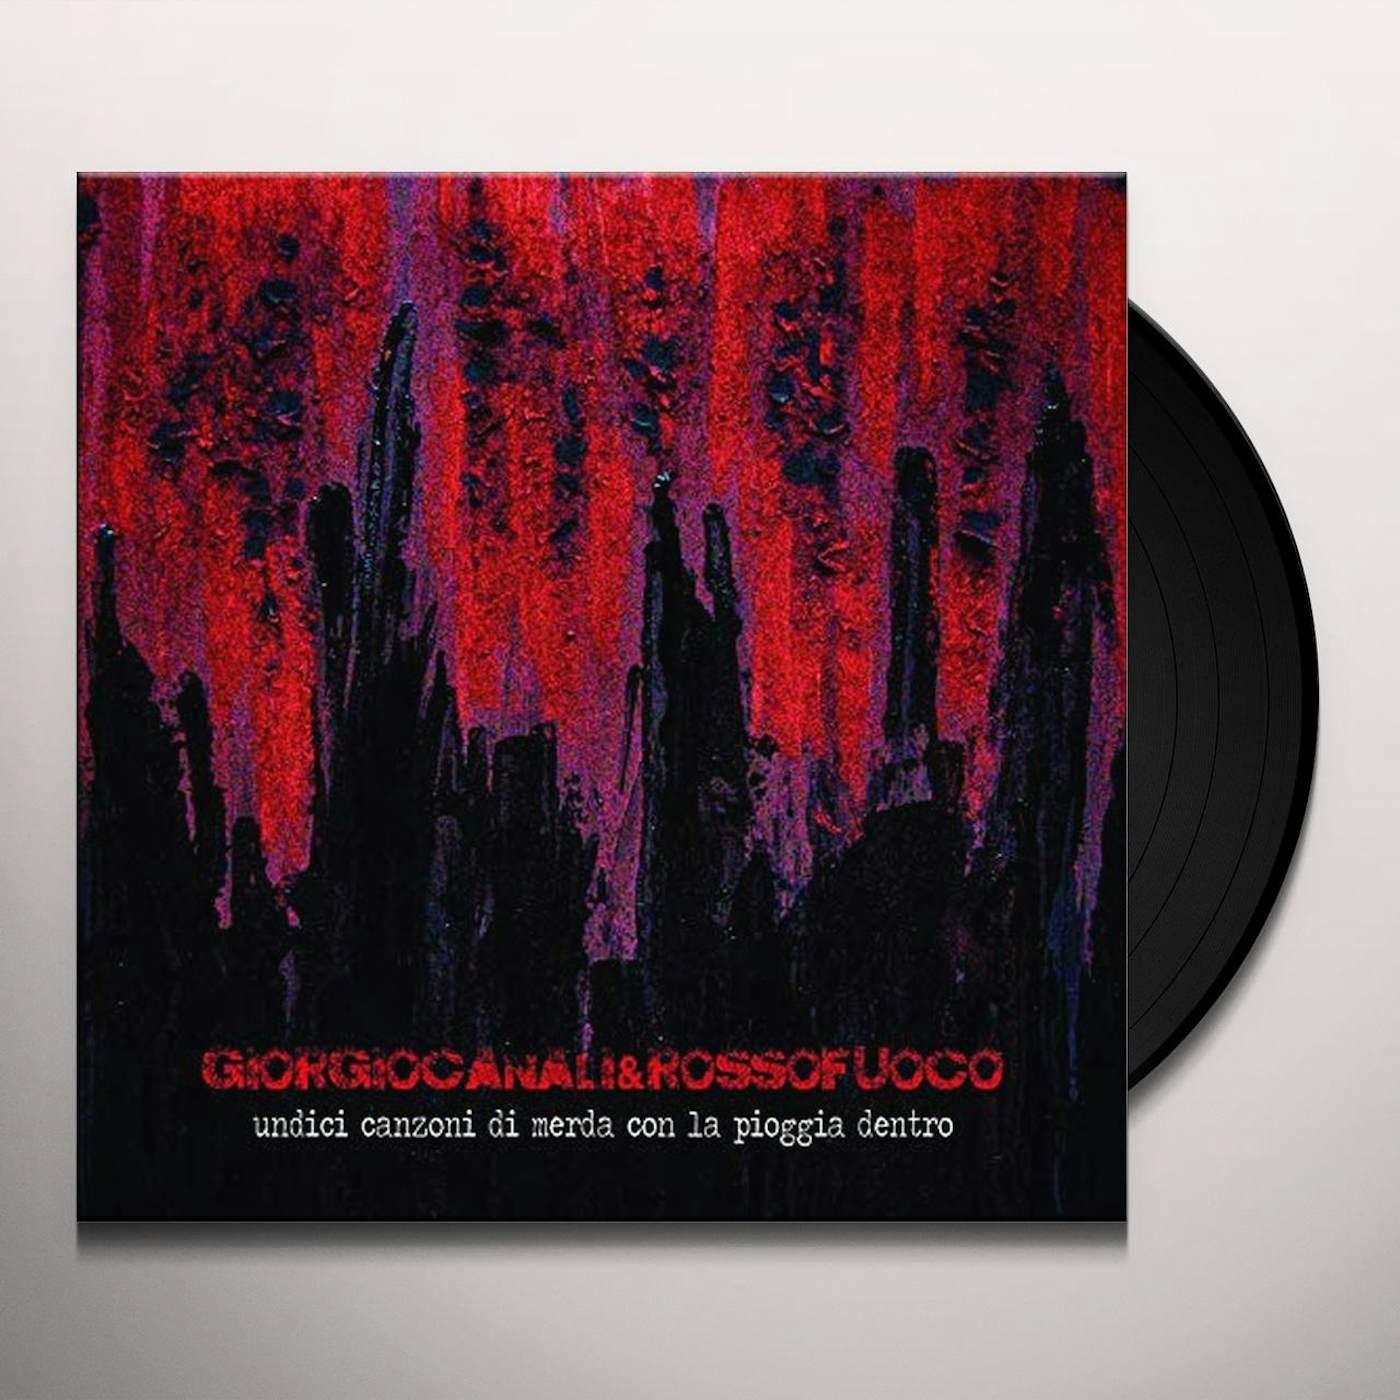 Giorgio Canali & Rossofuoco Undici Canzoni Di Merda Con La Pioggia Dentro Vinyl Record